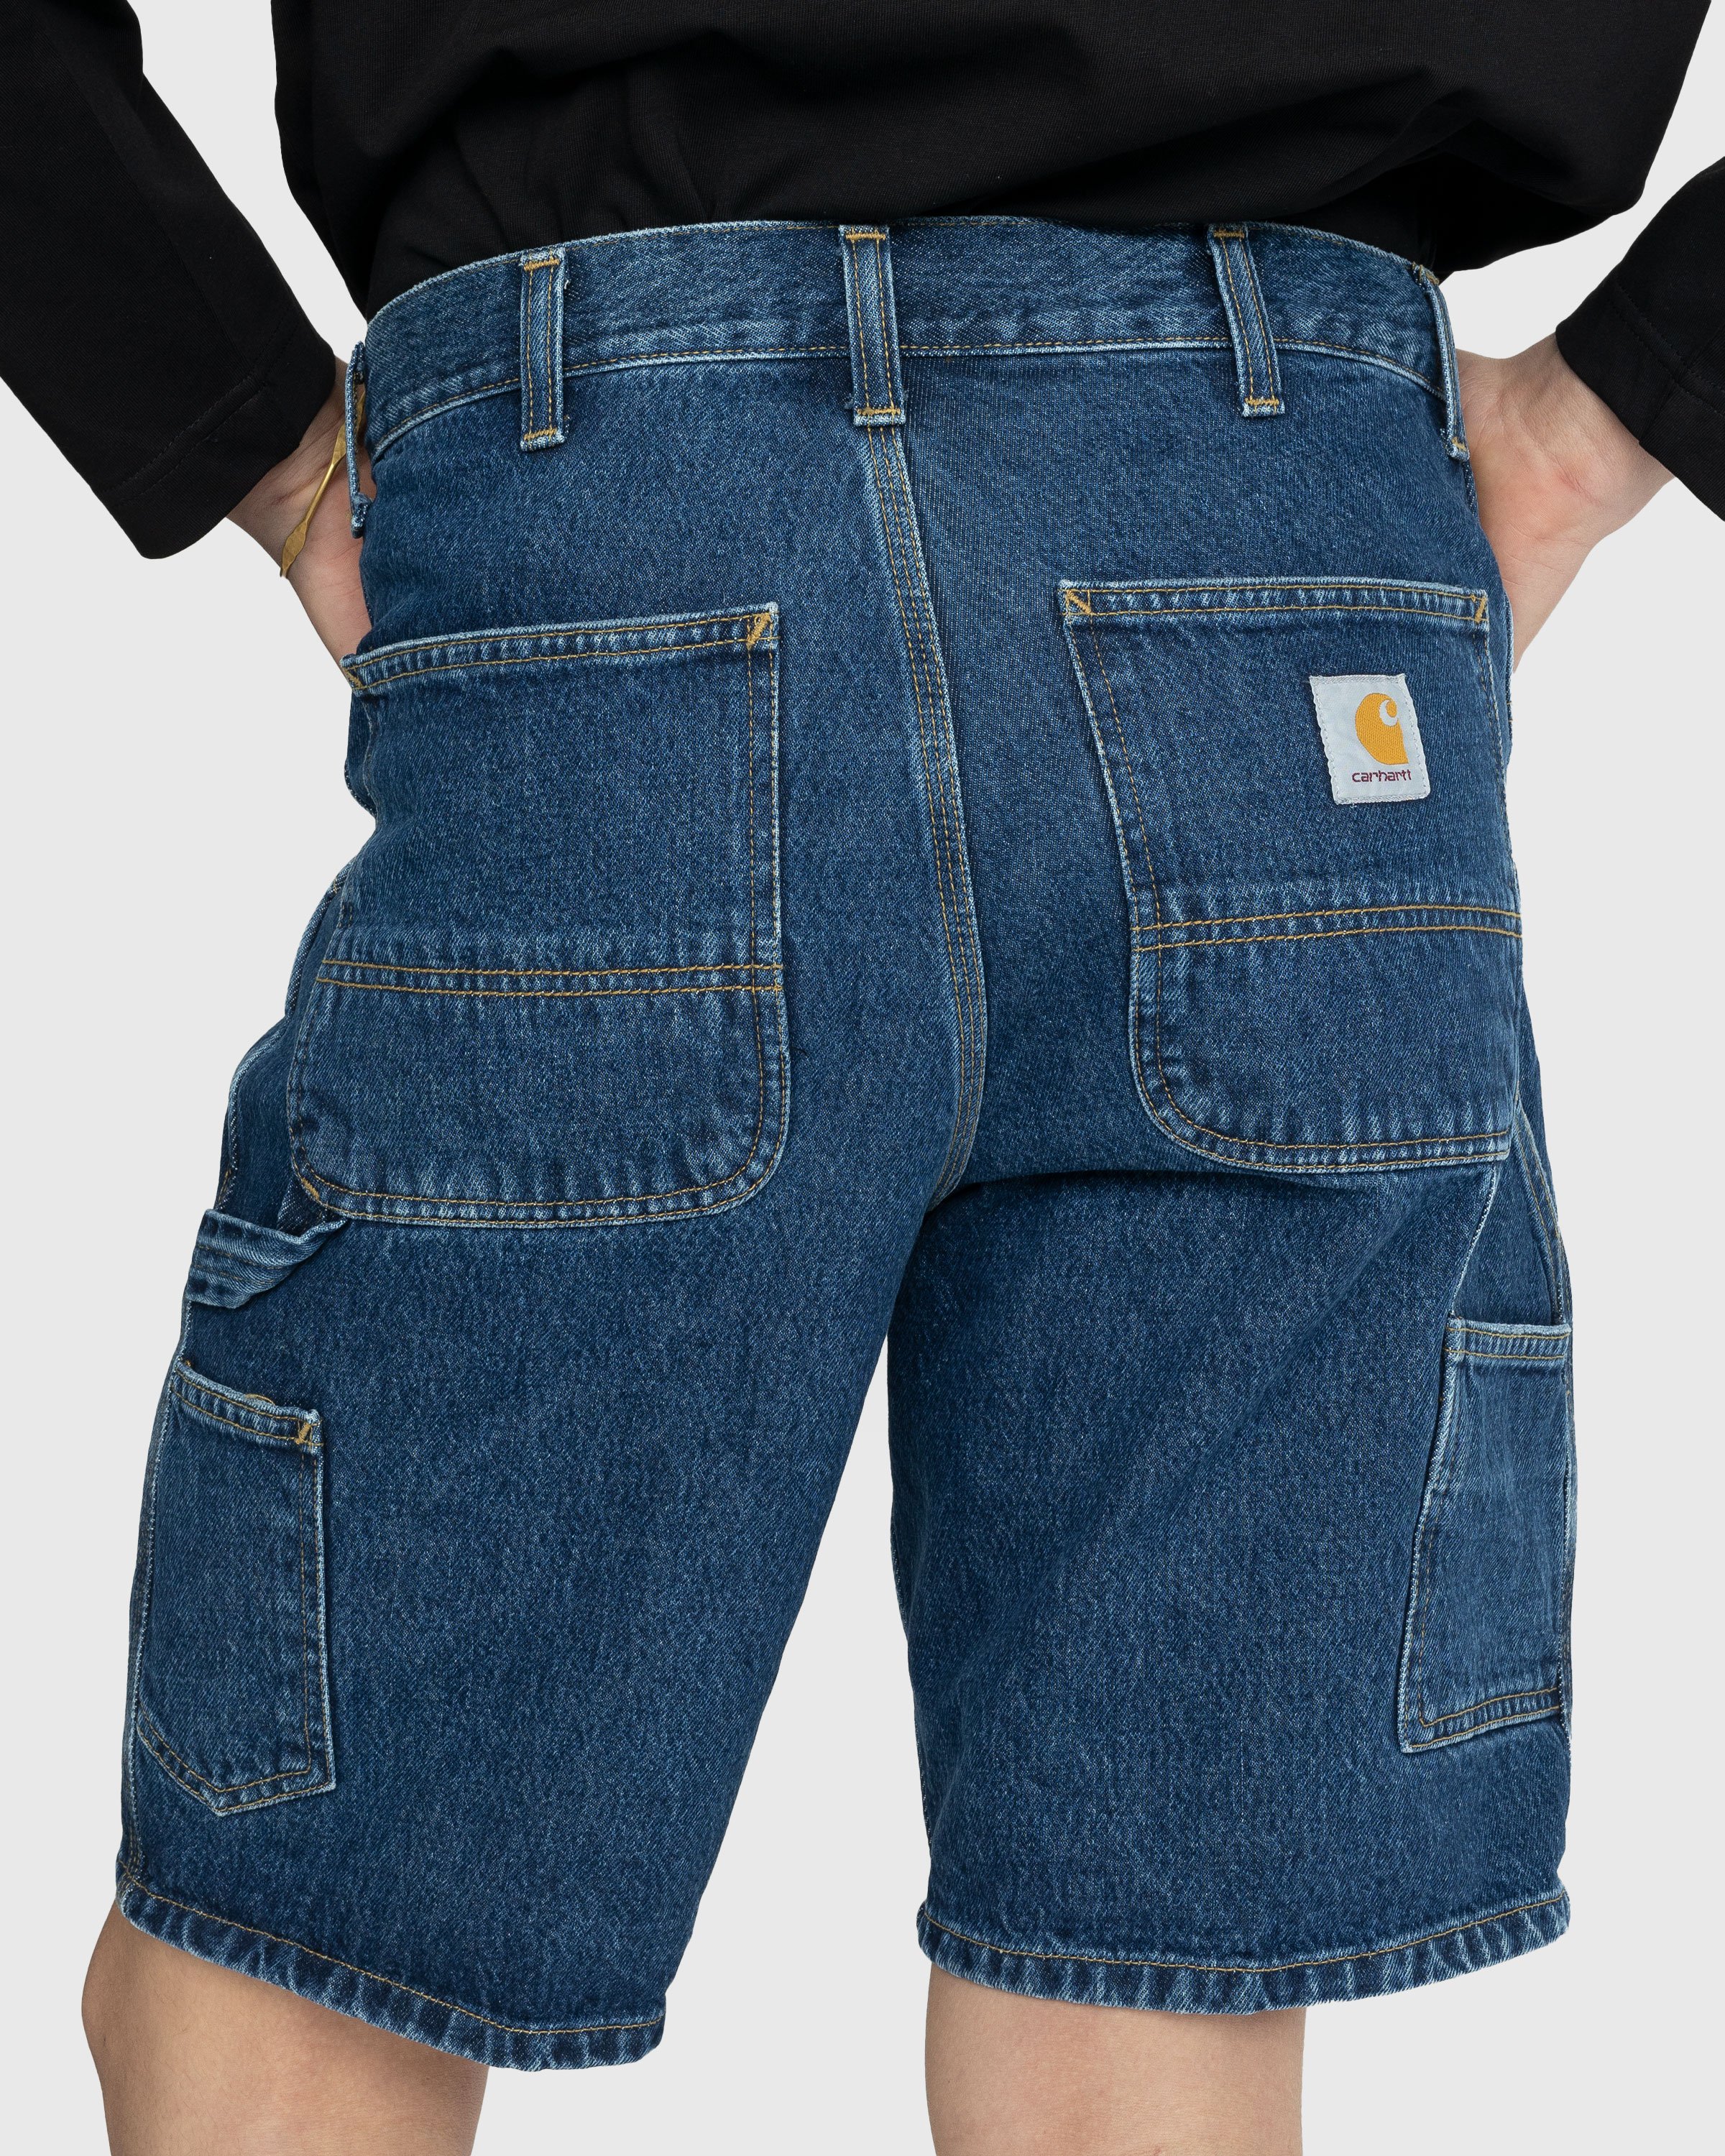 Carhartt WIP - Single Knee Short Stonewashed Blue - Clothing - Blue - Image 4